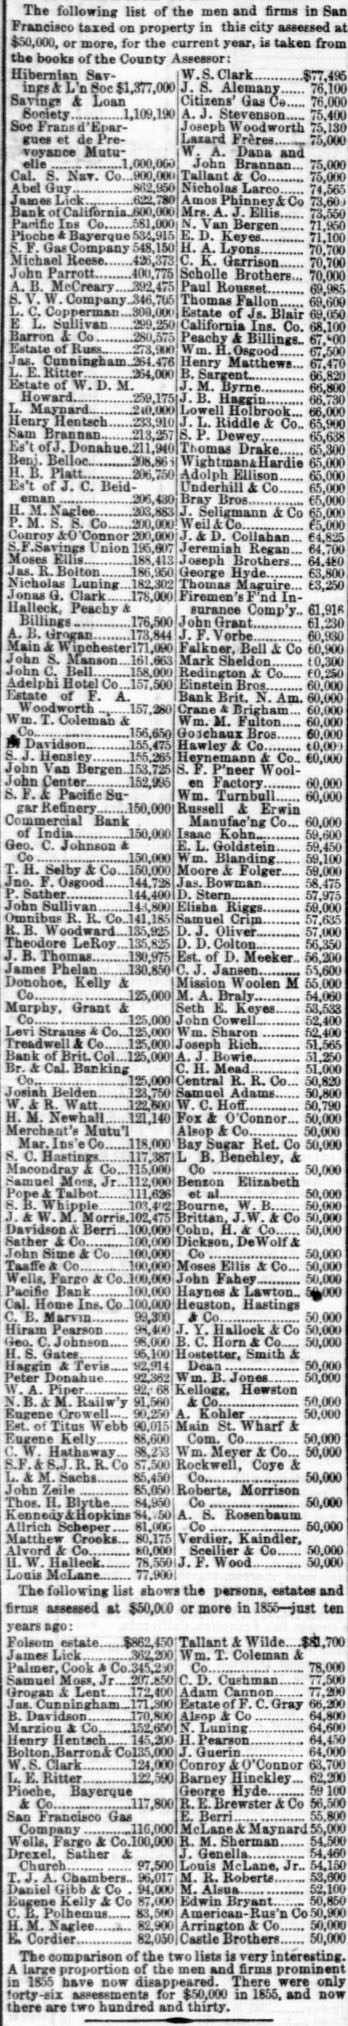 The Rich Men of San Francisco. Daily Alta California. 1865.